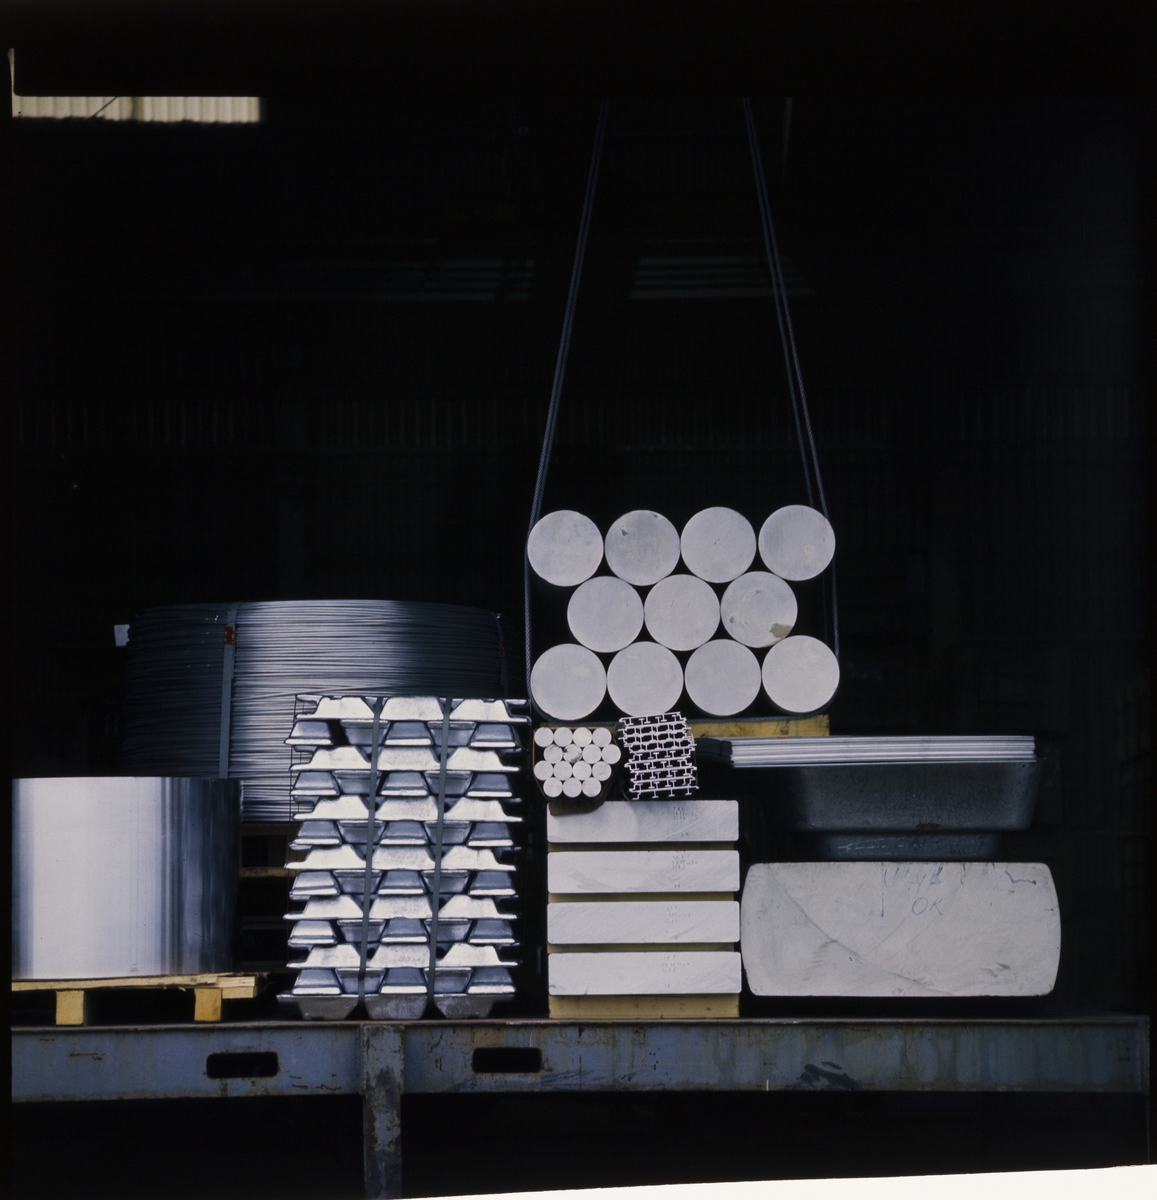 Bilder fra Alnor Aluminium på Karmøy. Det er bilder fra smelteverket, store aluminiumsplater på rull, et verksted, og ulike aluminiumsprodukter.